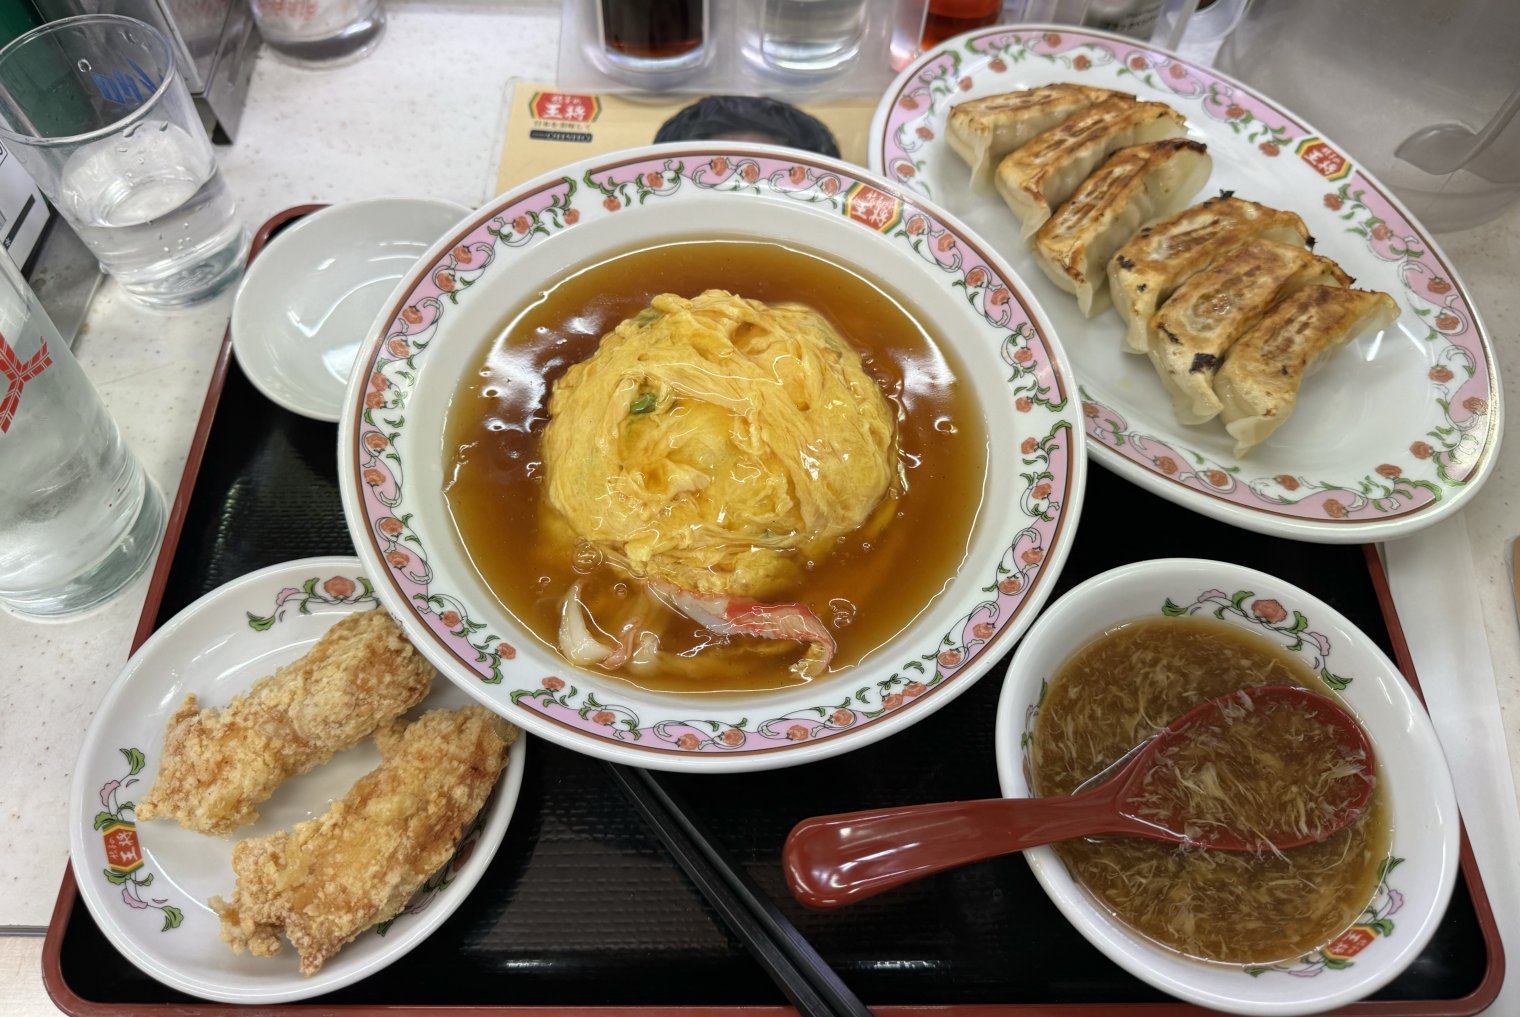 A massive meal with crab & egg main, gyoza, karāge, and bonito soup. 